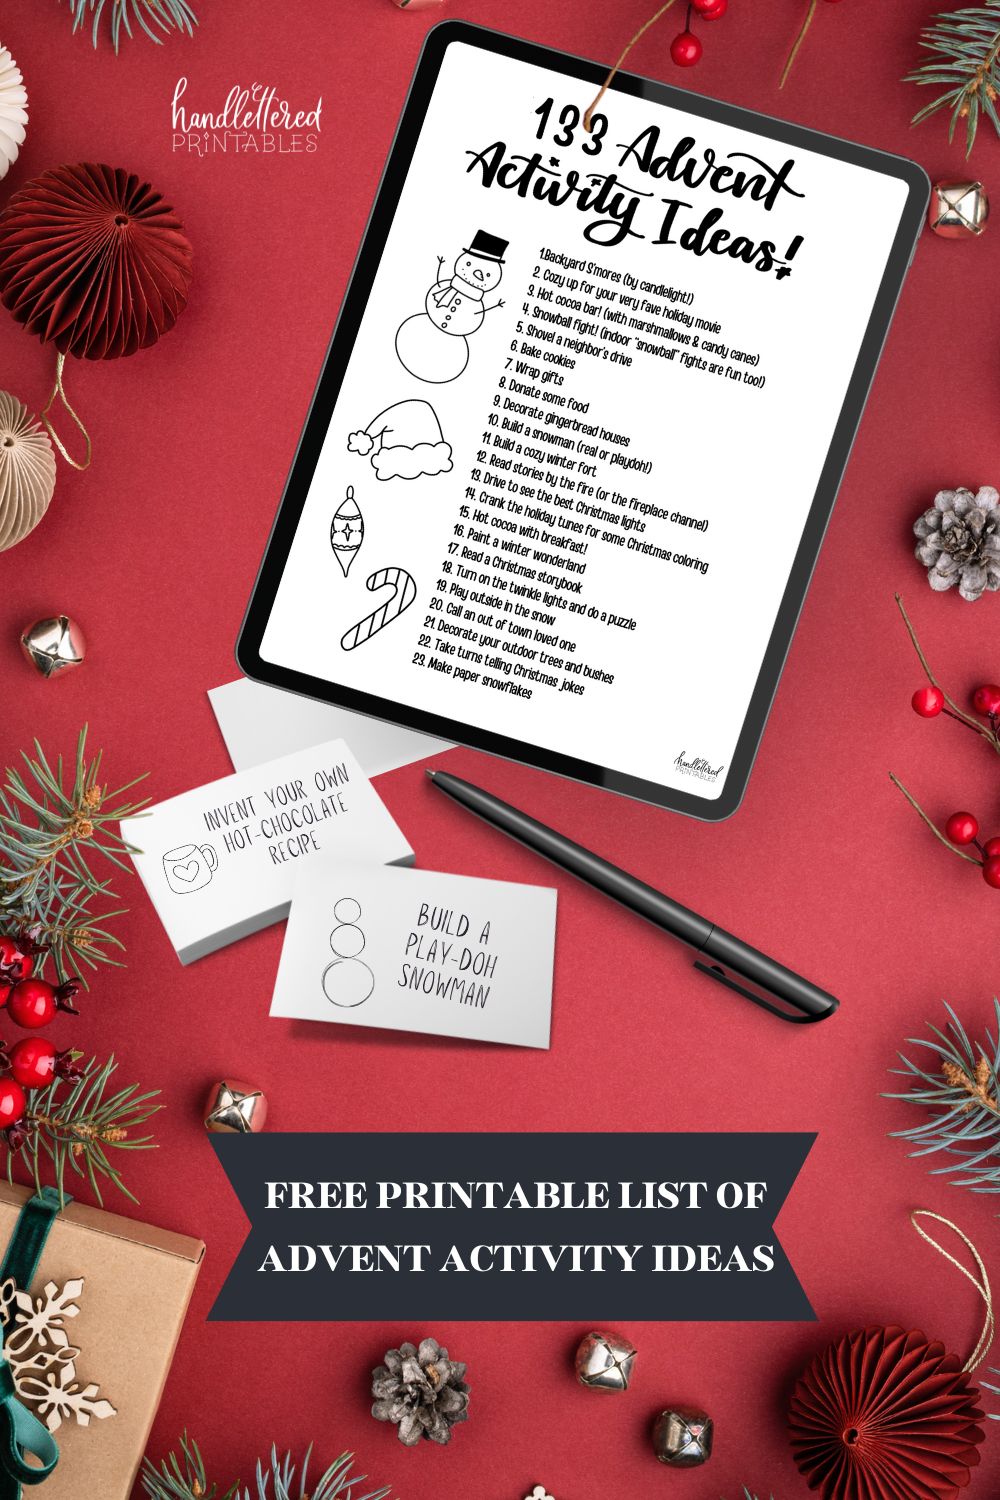 Christmas activity advent calendar ideas (free printable list)